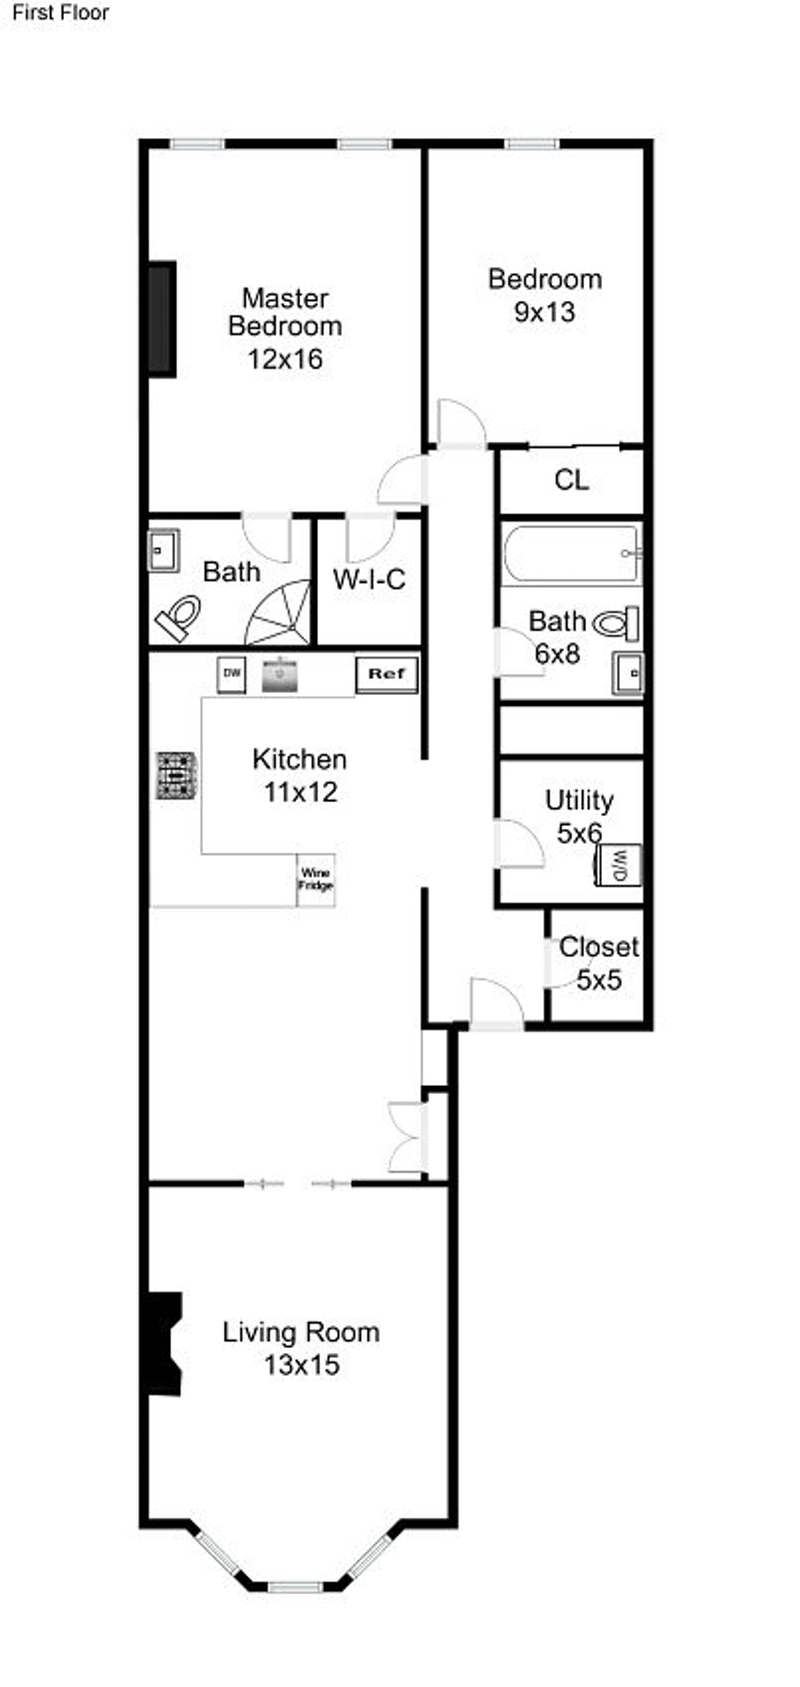 Floorplan for 1022 Hudson St, 1